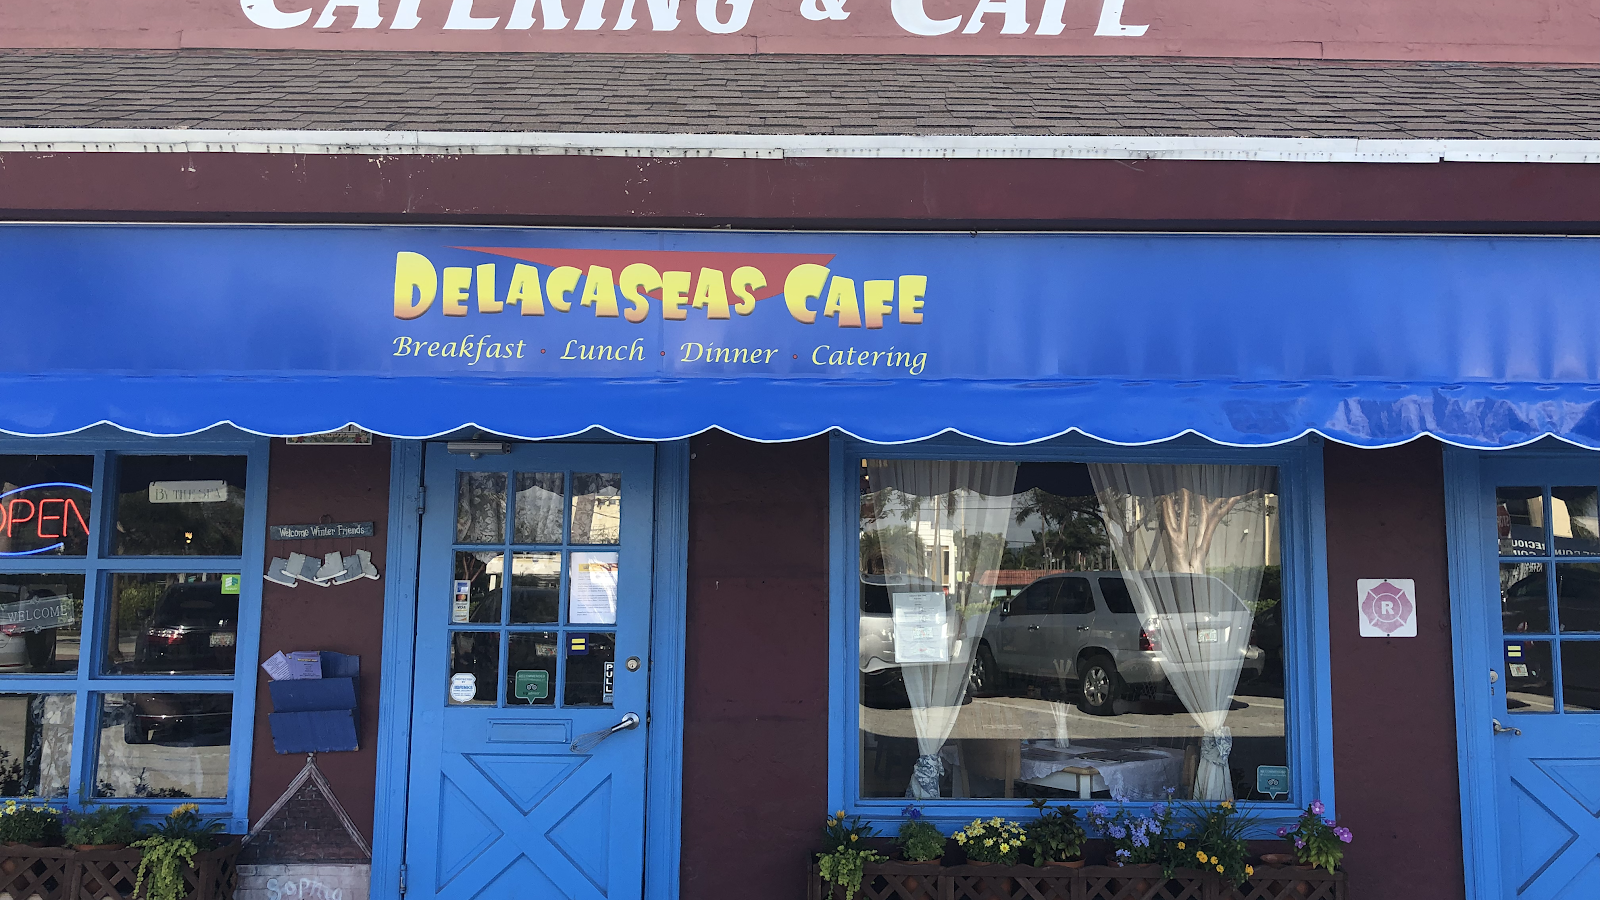 DelacaSeas Cafe